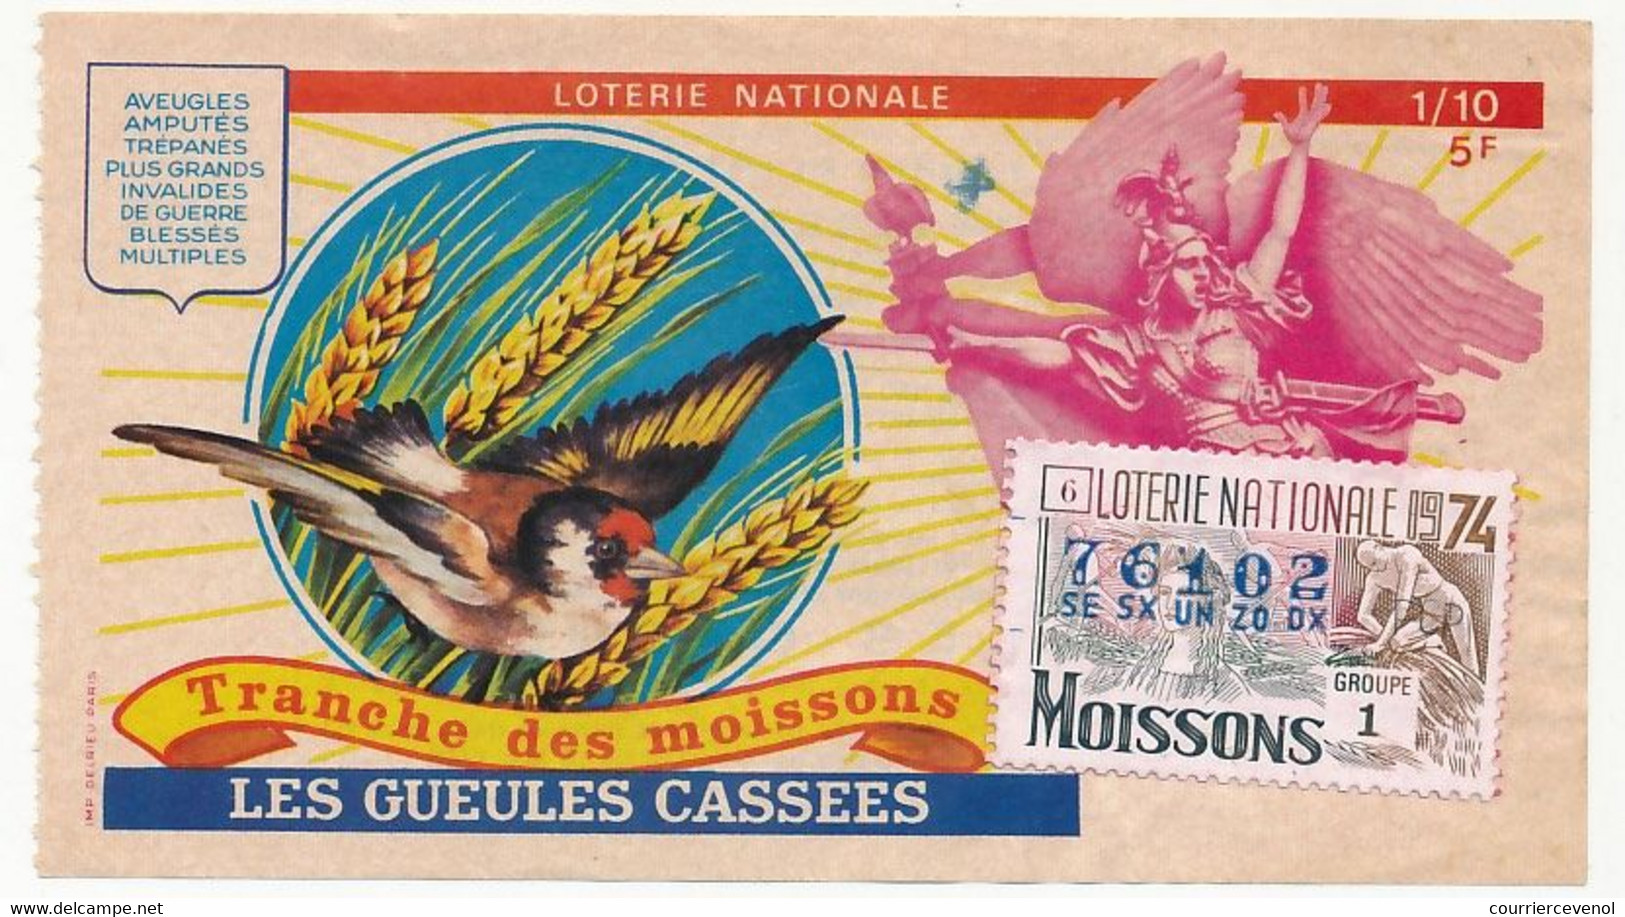 FRANCE - Loterie Nationale - 1/10ème - Les Gueules Cassées  - Tranche Des Moissons - 1974 - Billets De Loterie